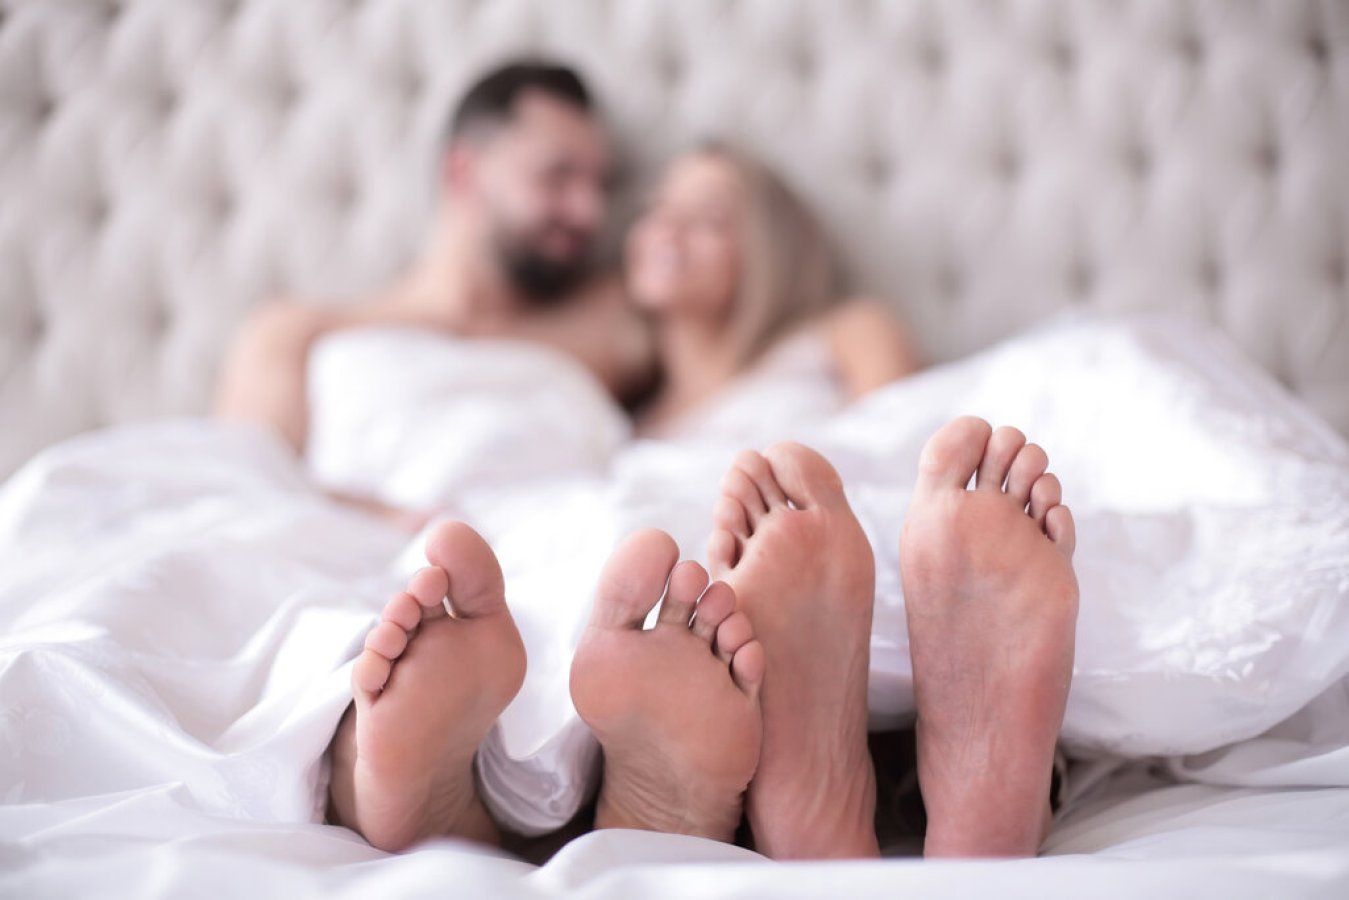 एक नए अध्ययन से पता चलता है कि शादीशुदा लोग कितनी बार सेक्स करते हैं